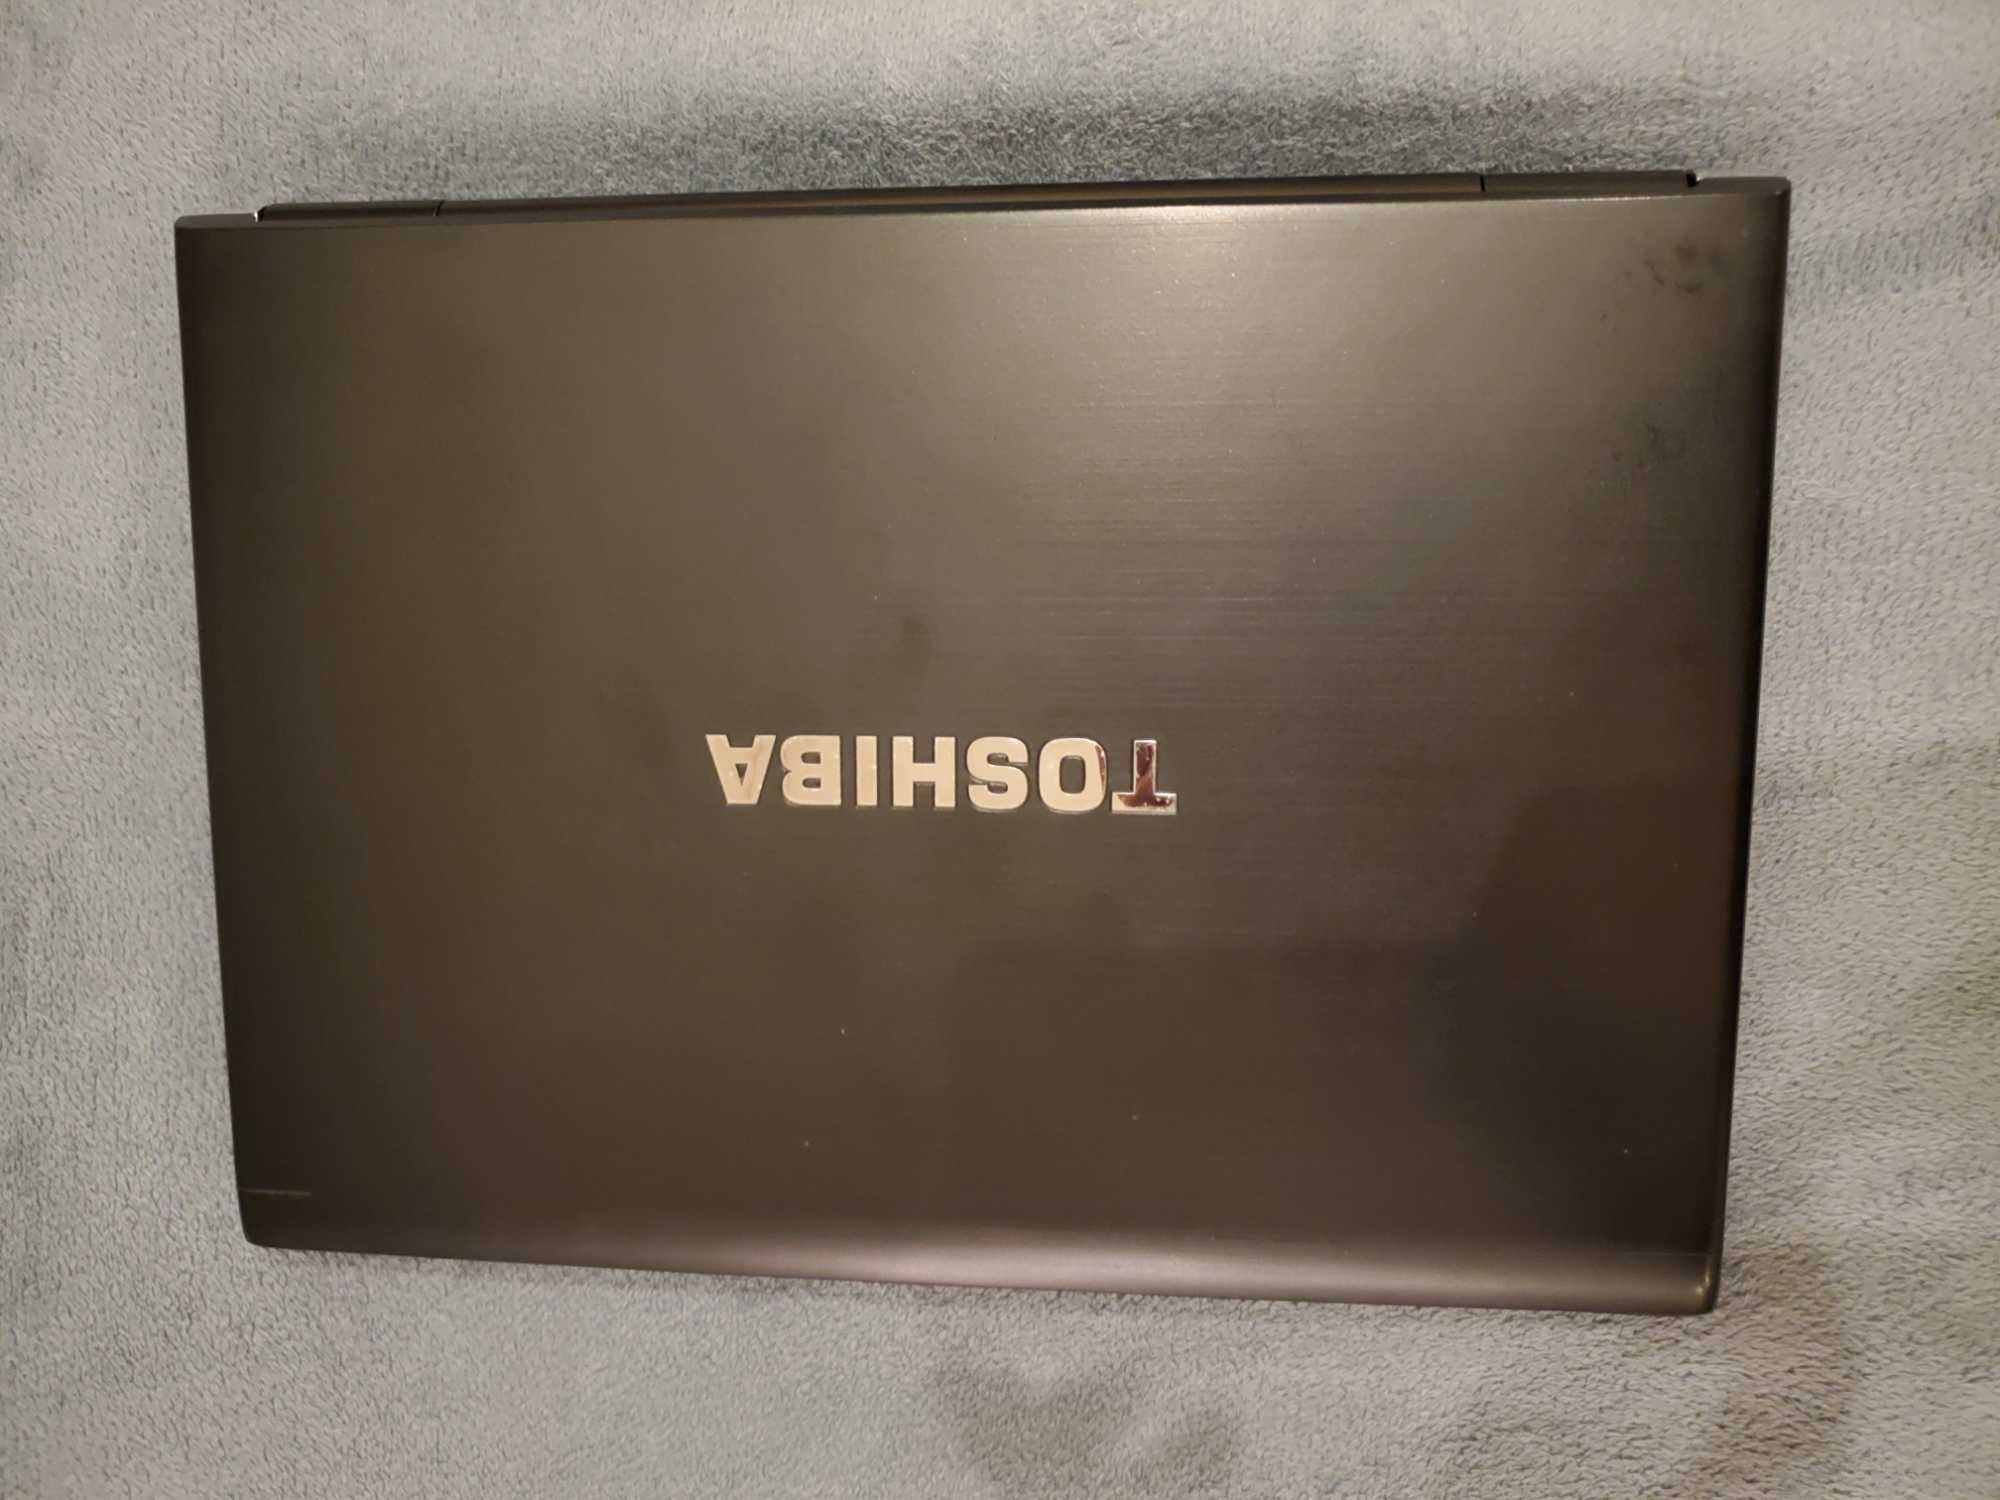 Toshiba Portege R700 - Ecrâ 13,3", Processador i7-620M, 8Gb Ram